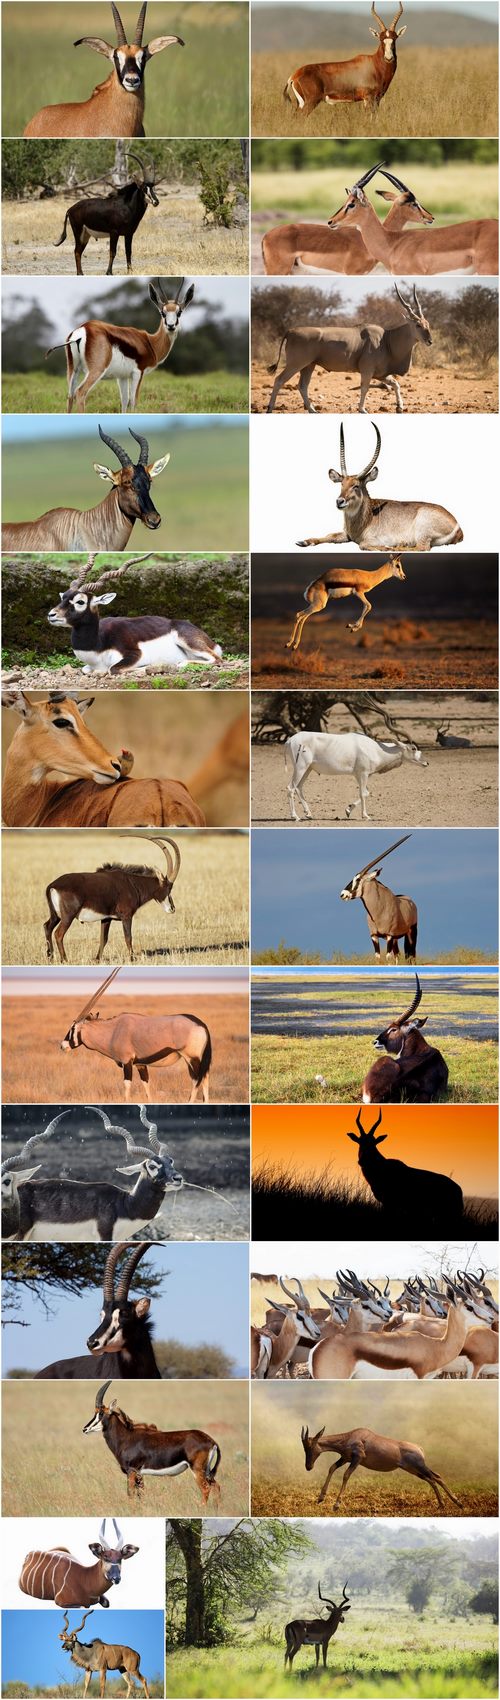 Antelope horn herbivore nature landscape 25 HQ Jpeg